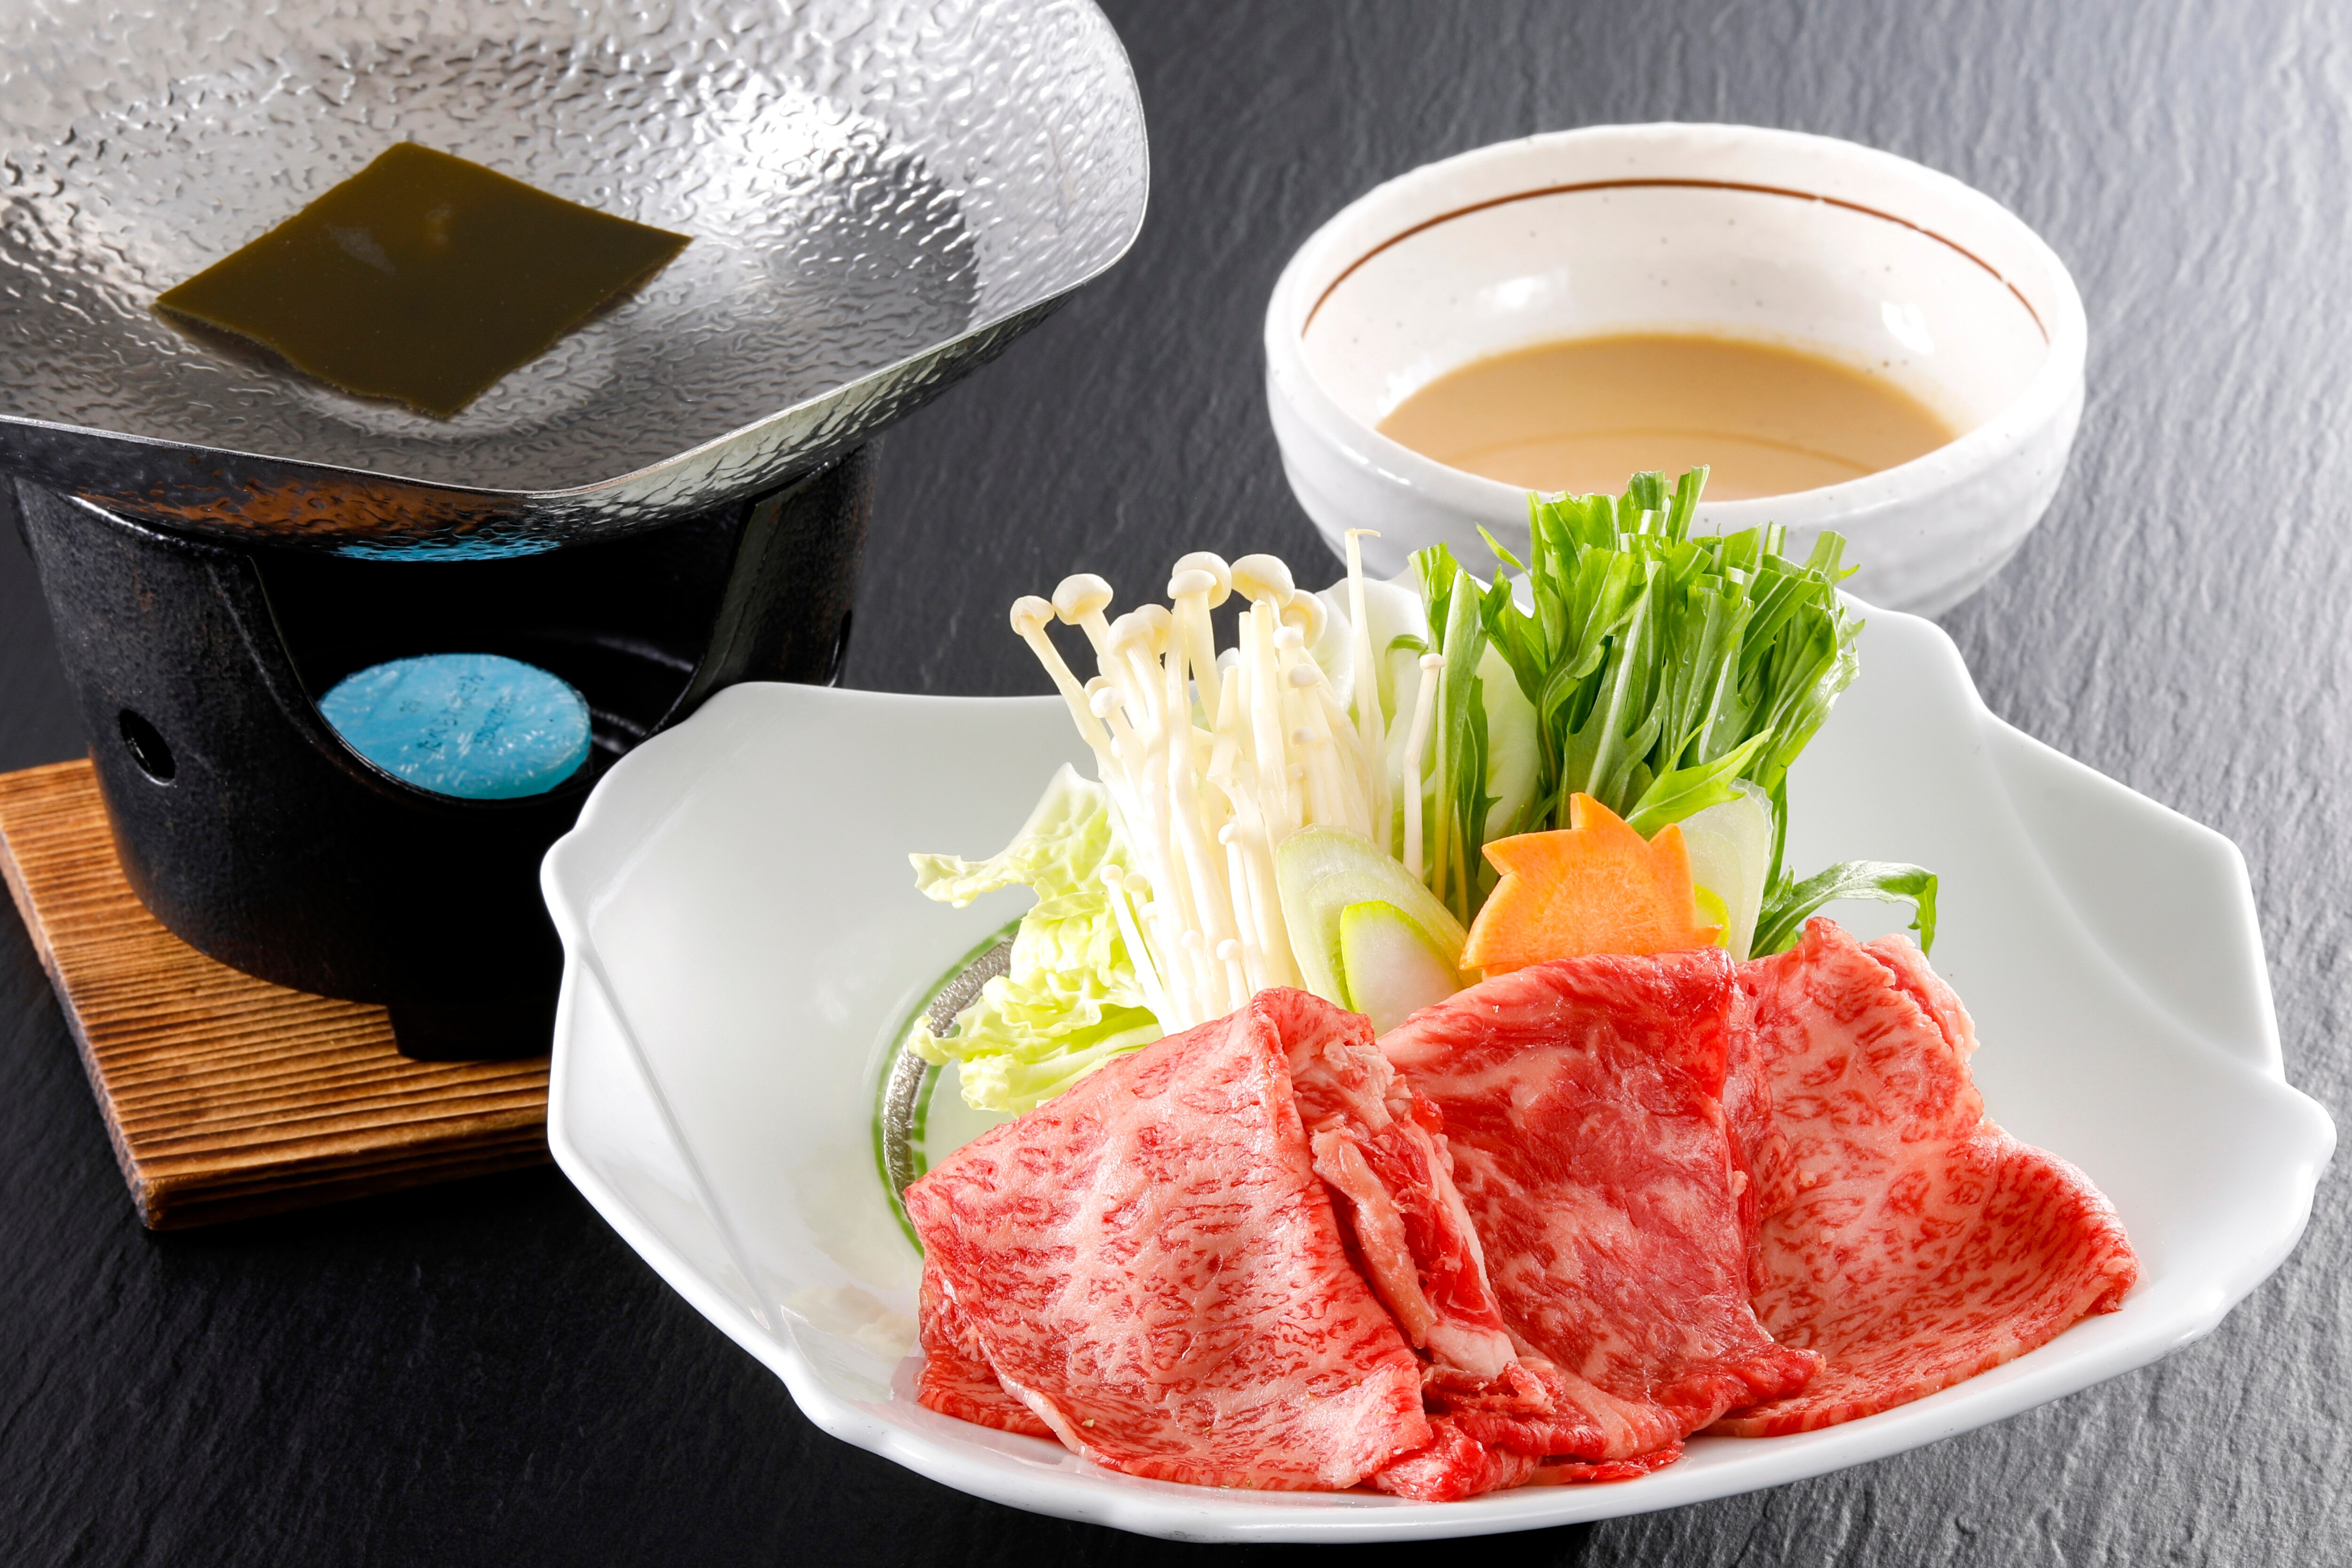 Japanese beef shabu-shabu